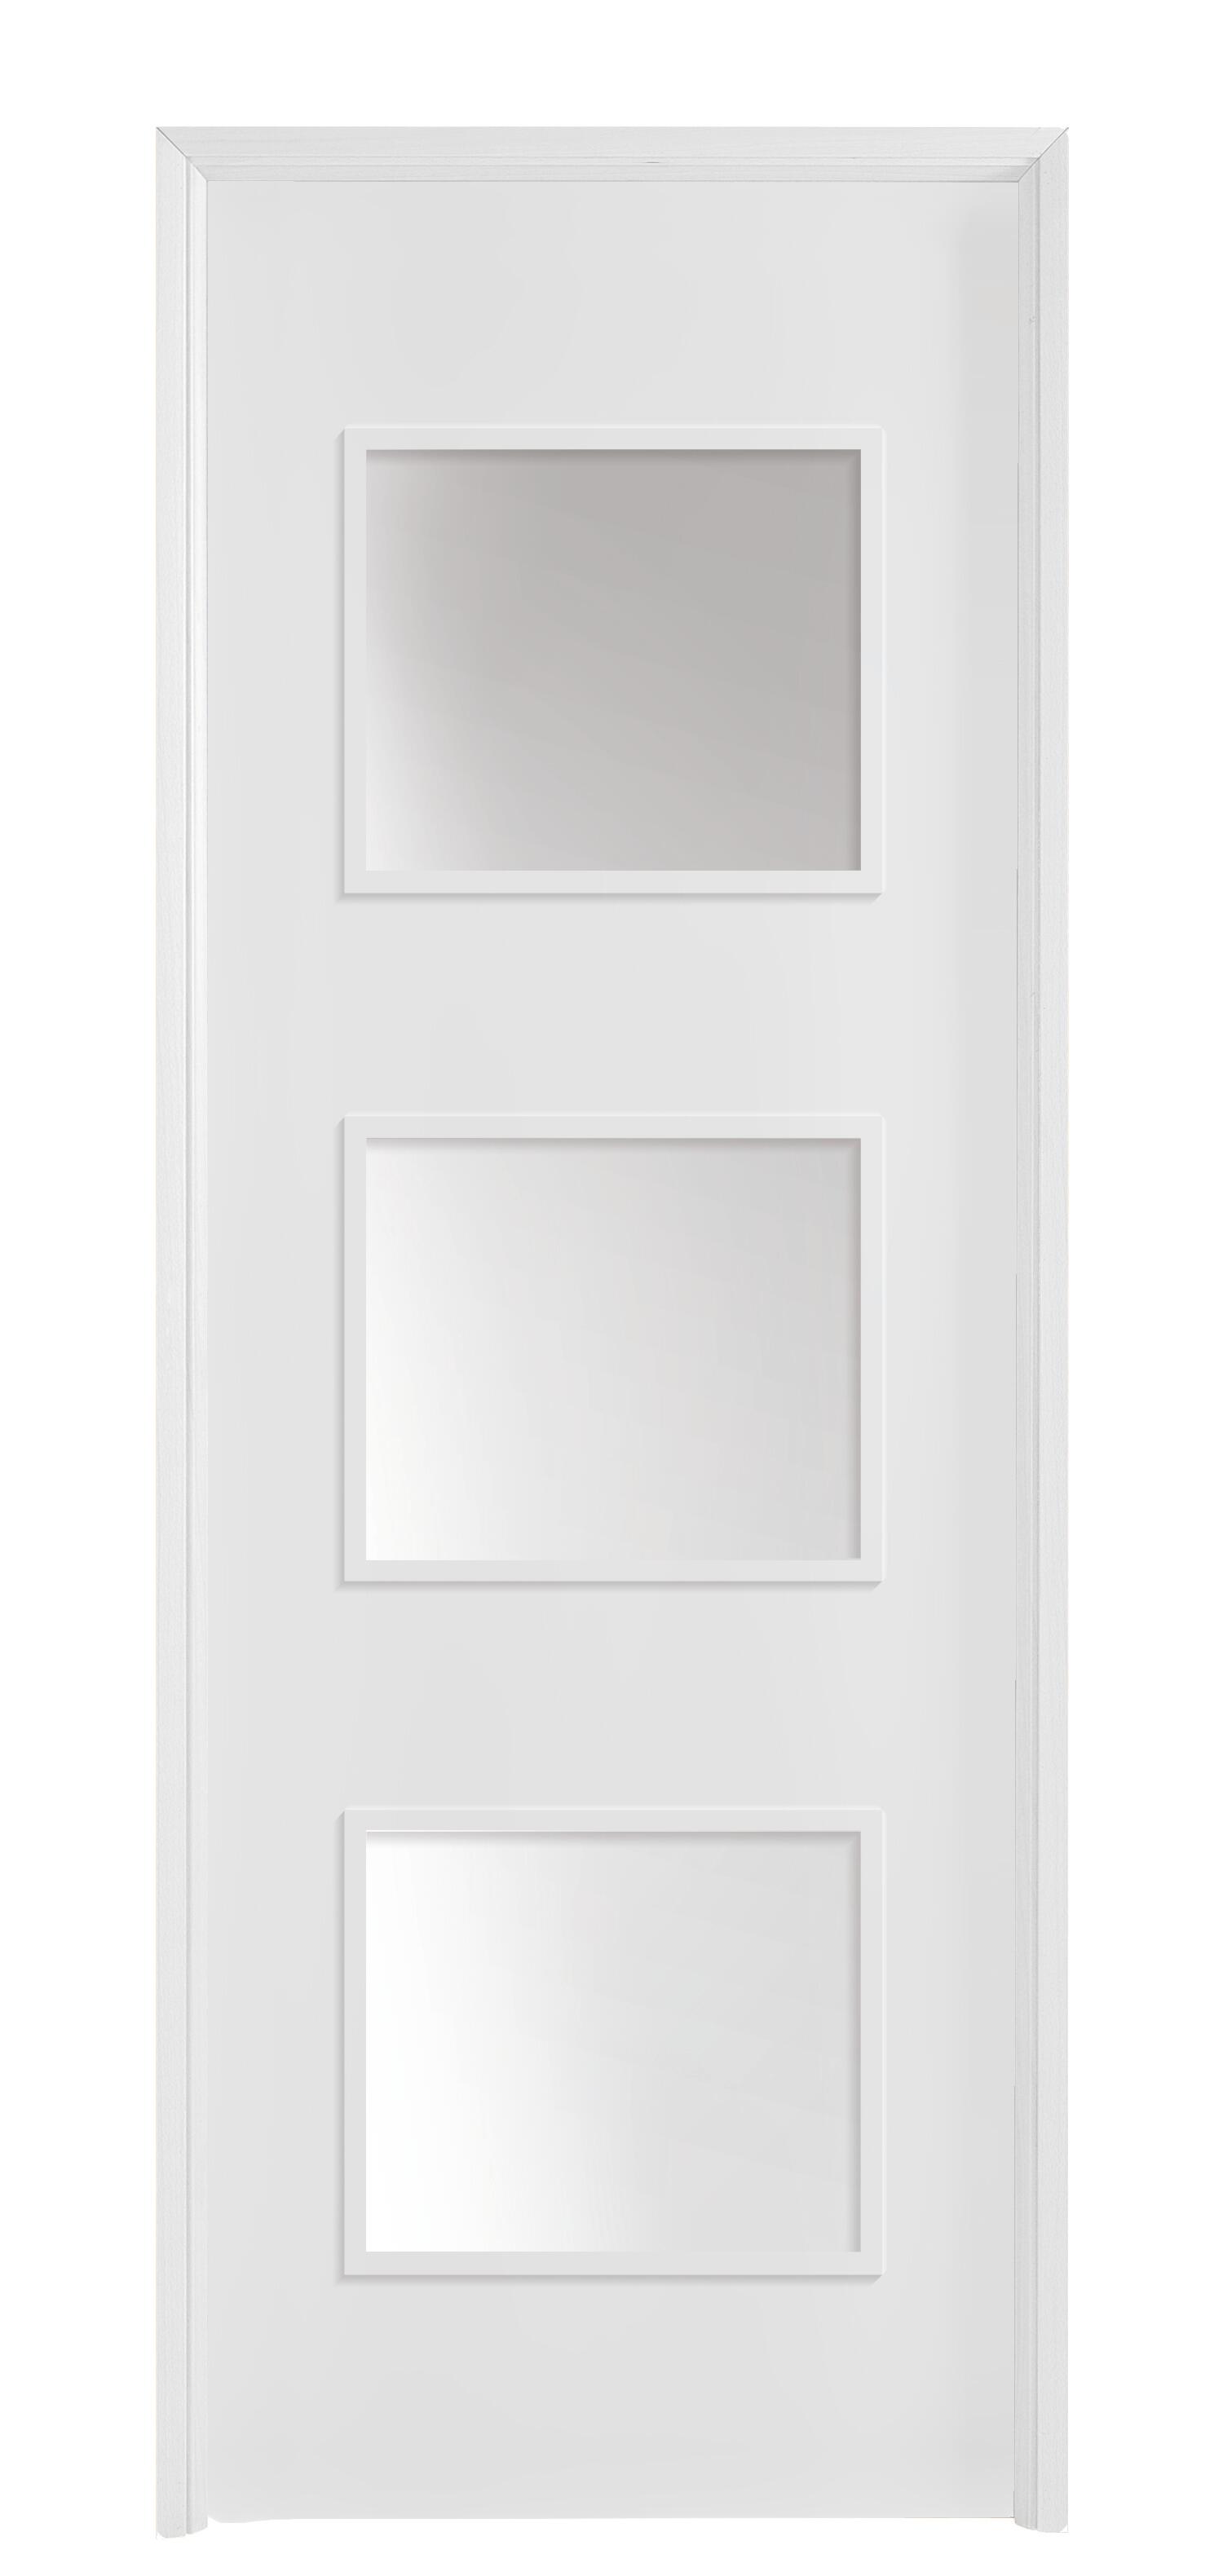 Puerta acristalada bari plus blanca 92,5 cm d